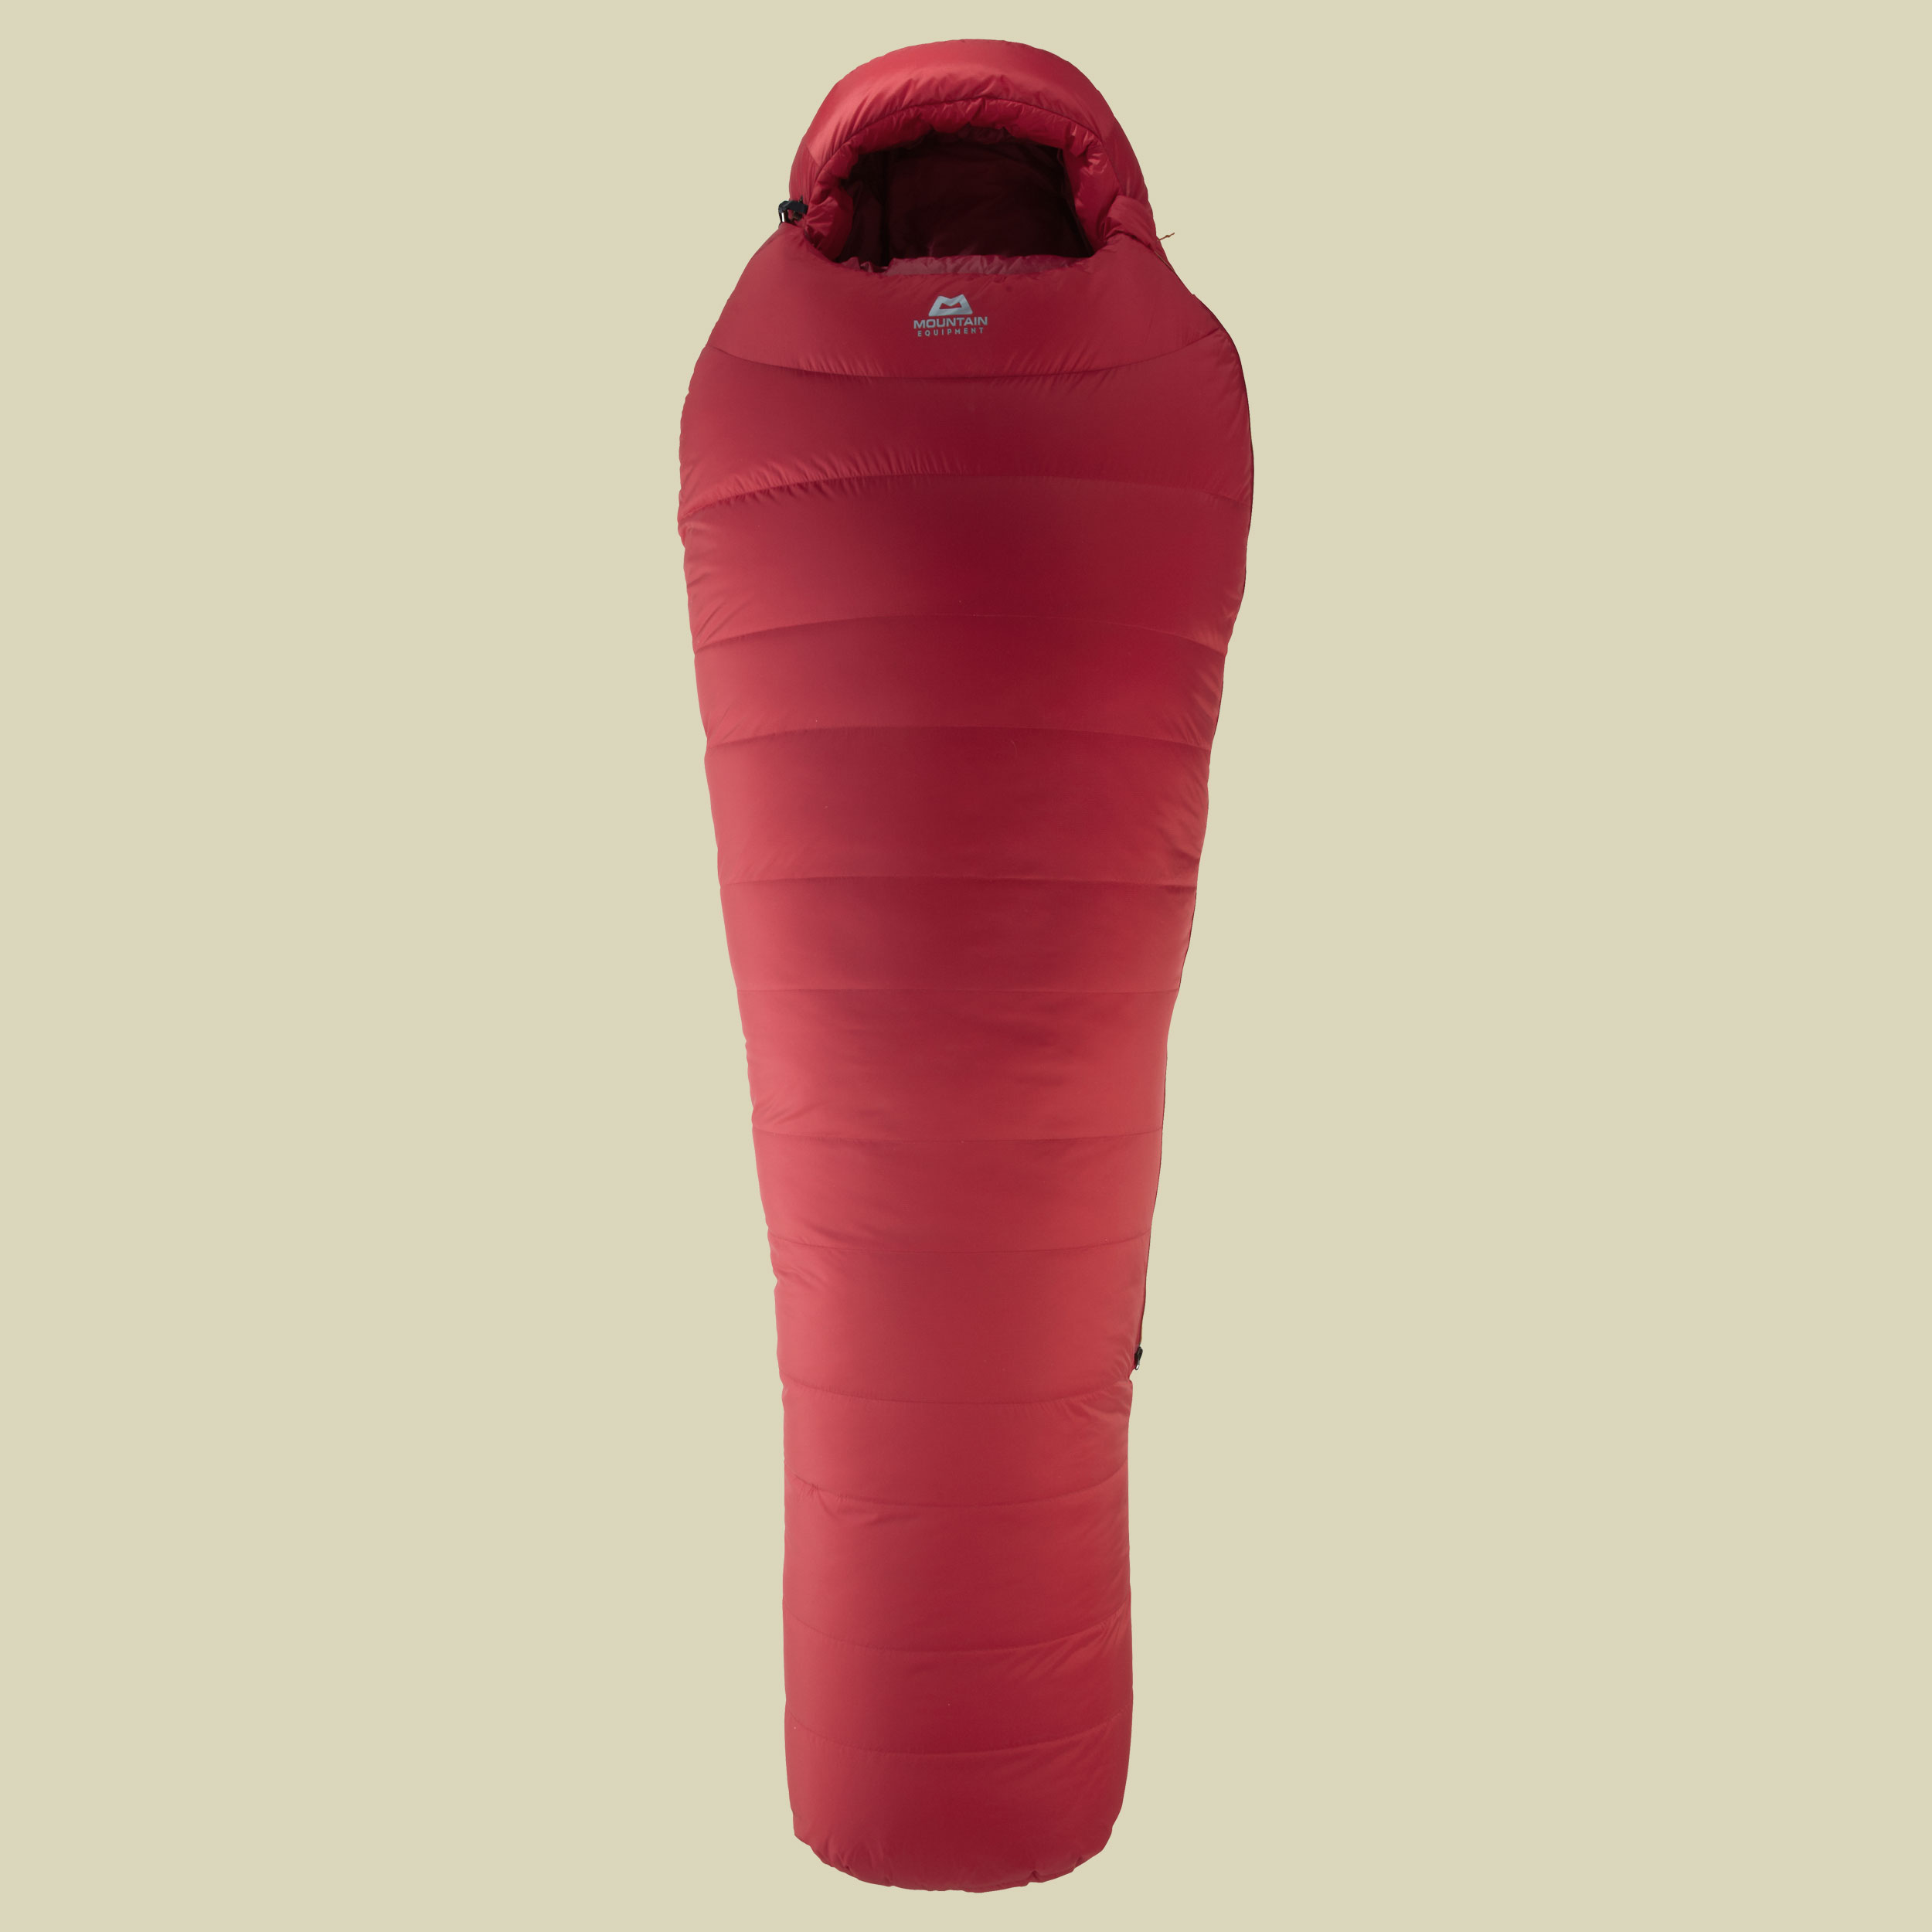 Glacier Expedition Long bis Körpergröße Schlafsack 200 cm Farbe imperial red, Reißverschluss Schlafsack links